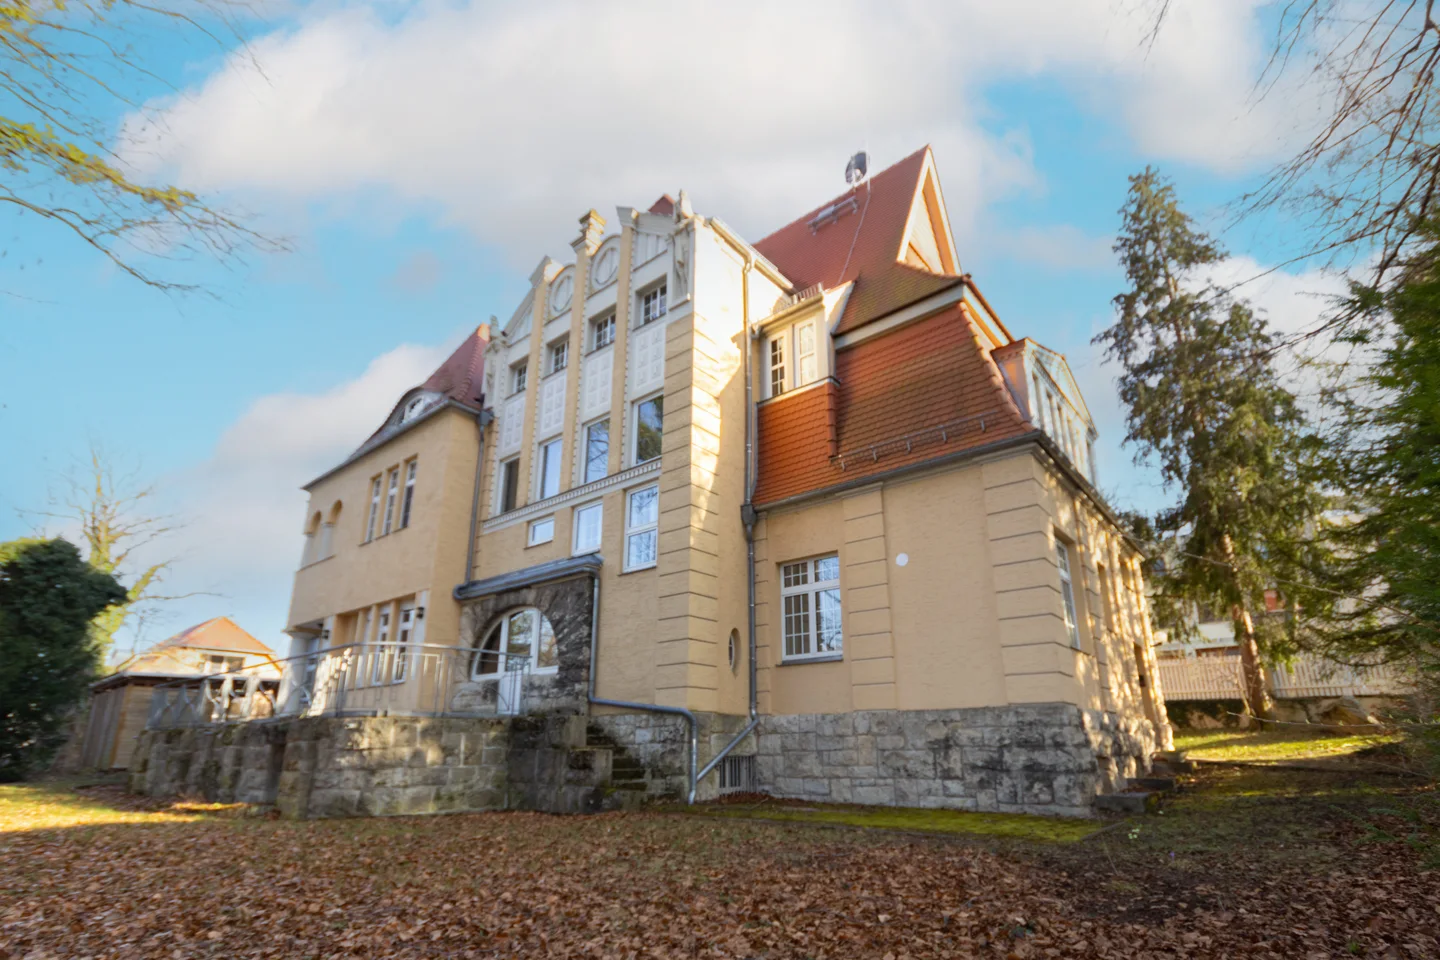 Exquisite Zapfe - Villa ,,Deinhardt“ in der begehrten Westvorstadt Weimars